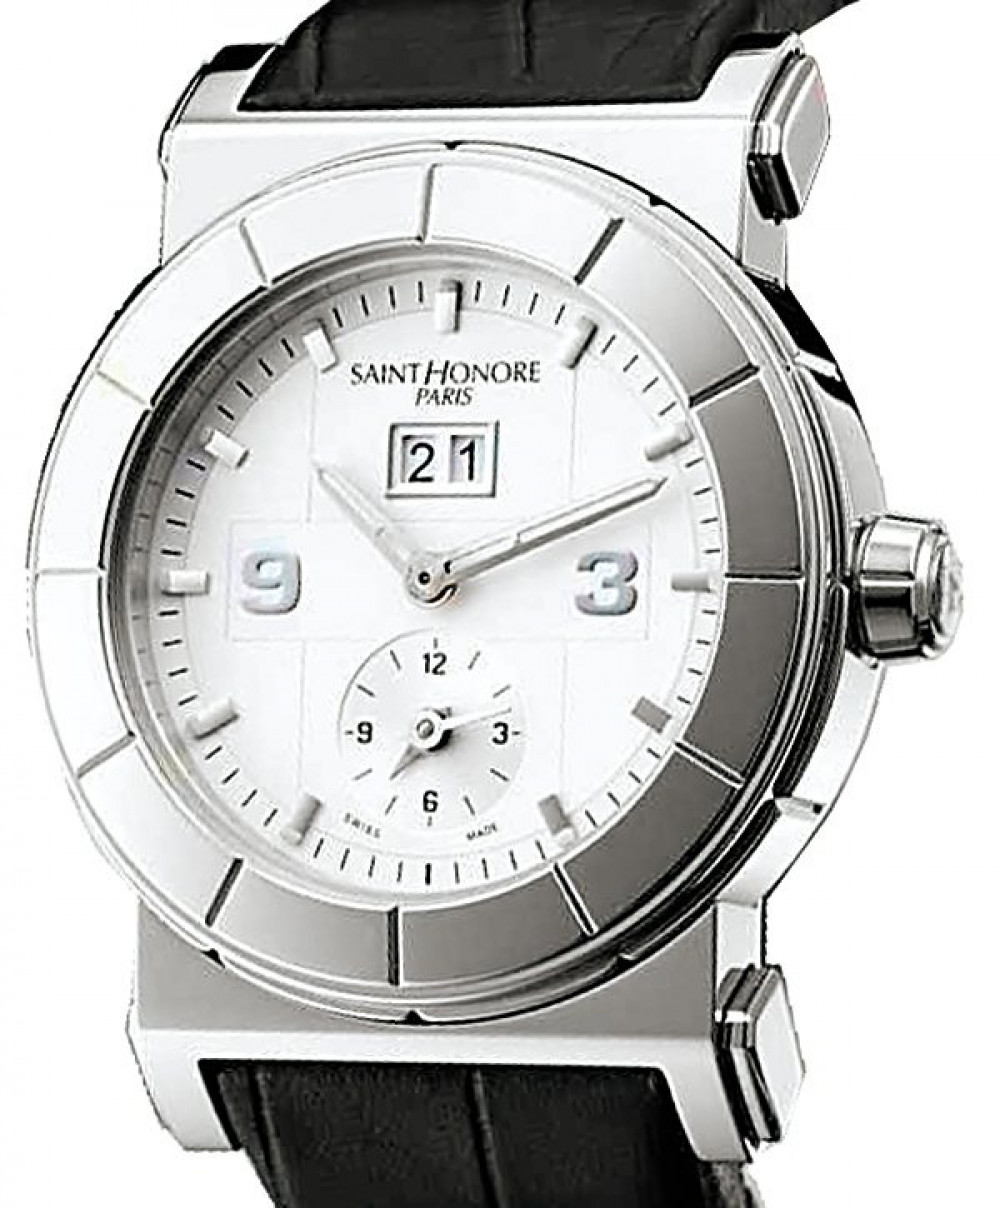 Zegarek firmy Saint Honoré Paris, model Coloseo Automatik